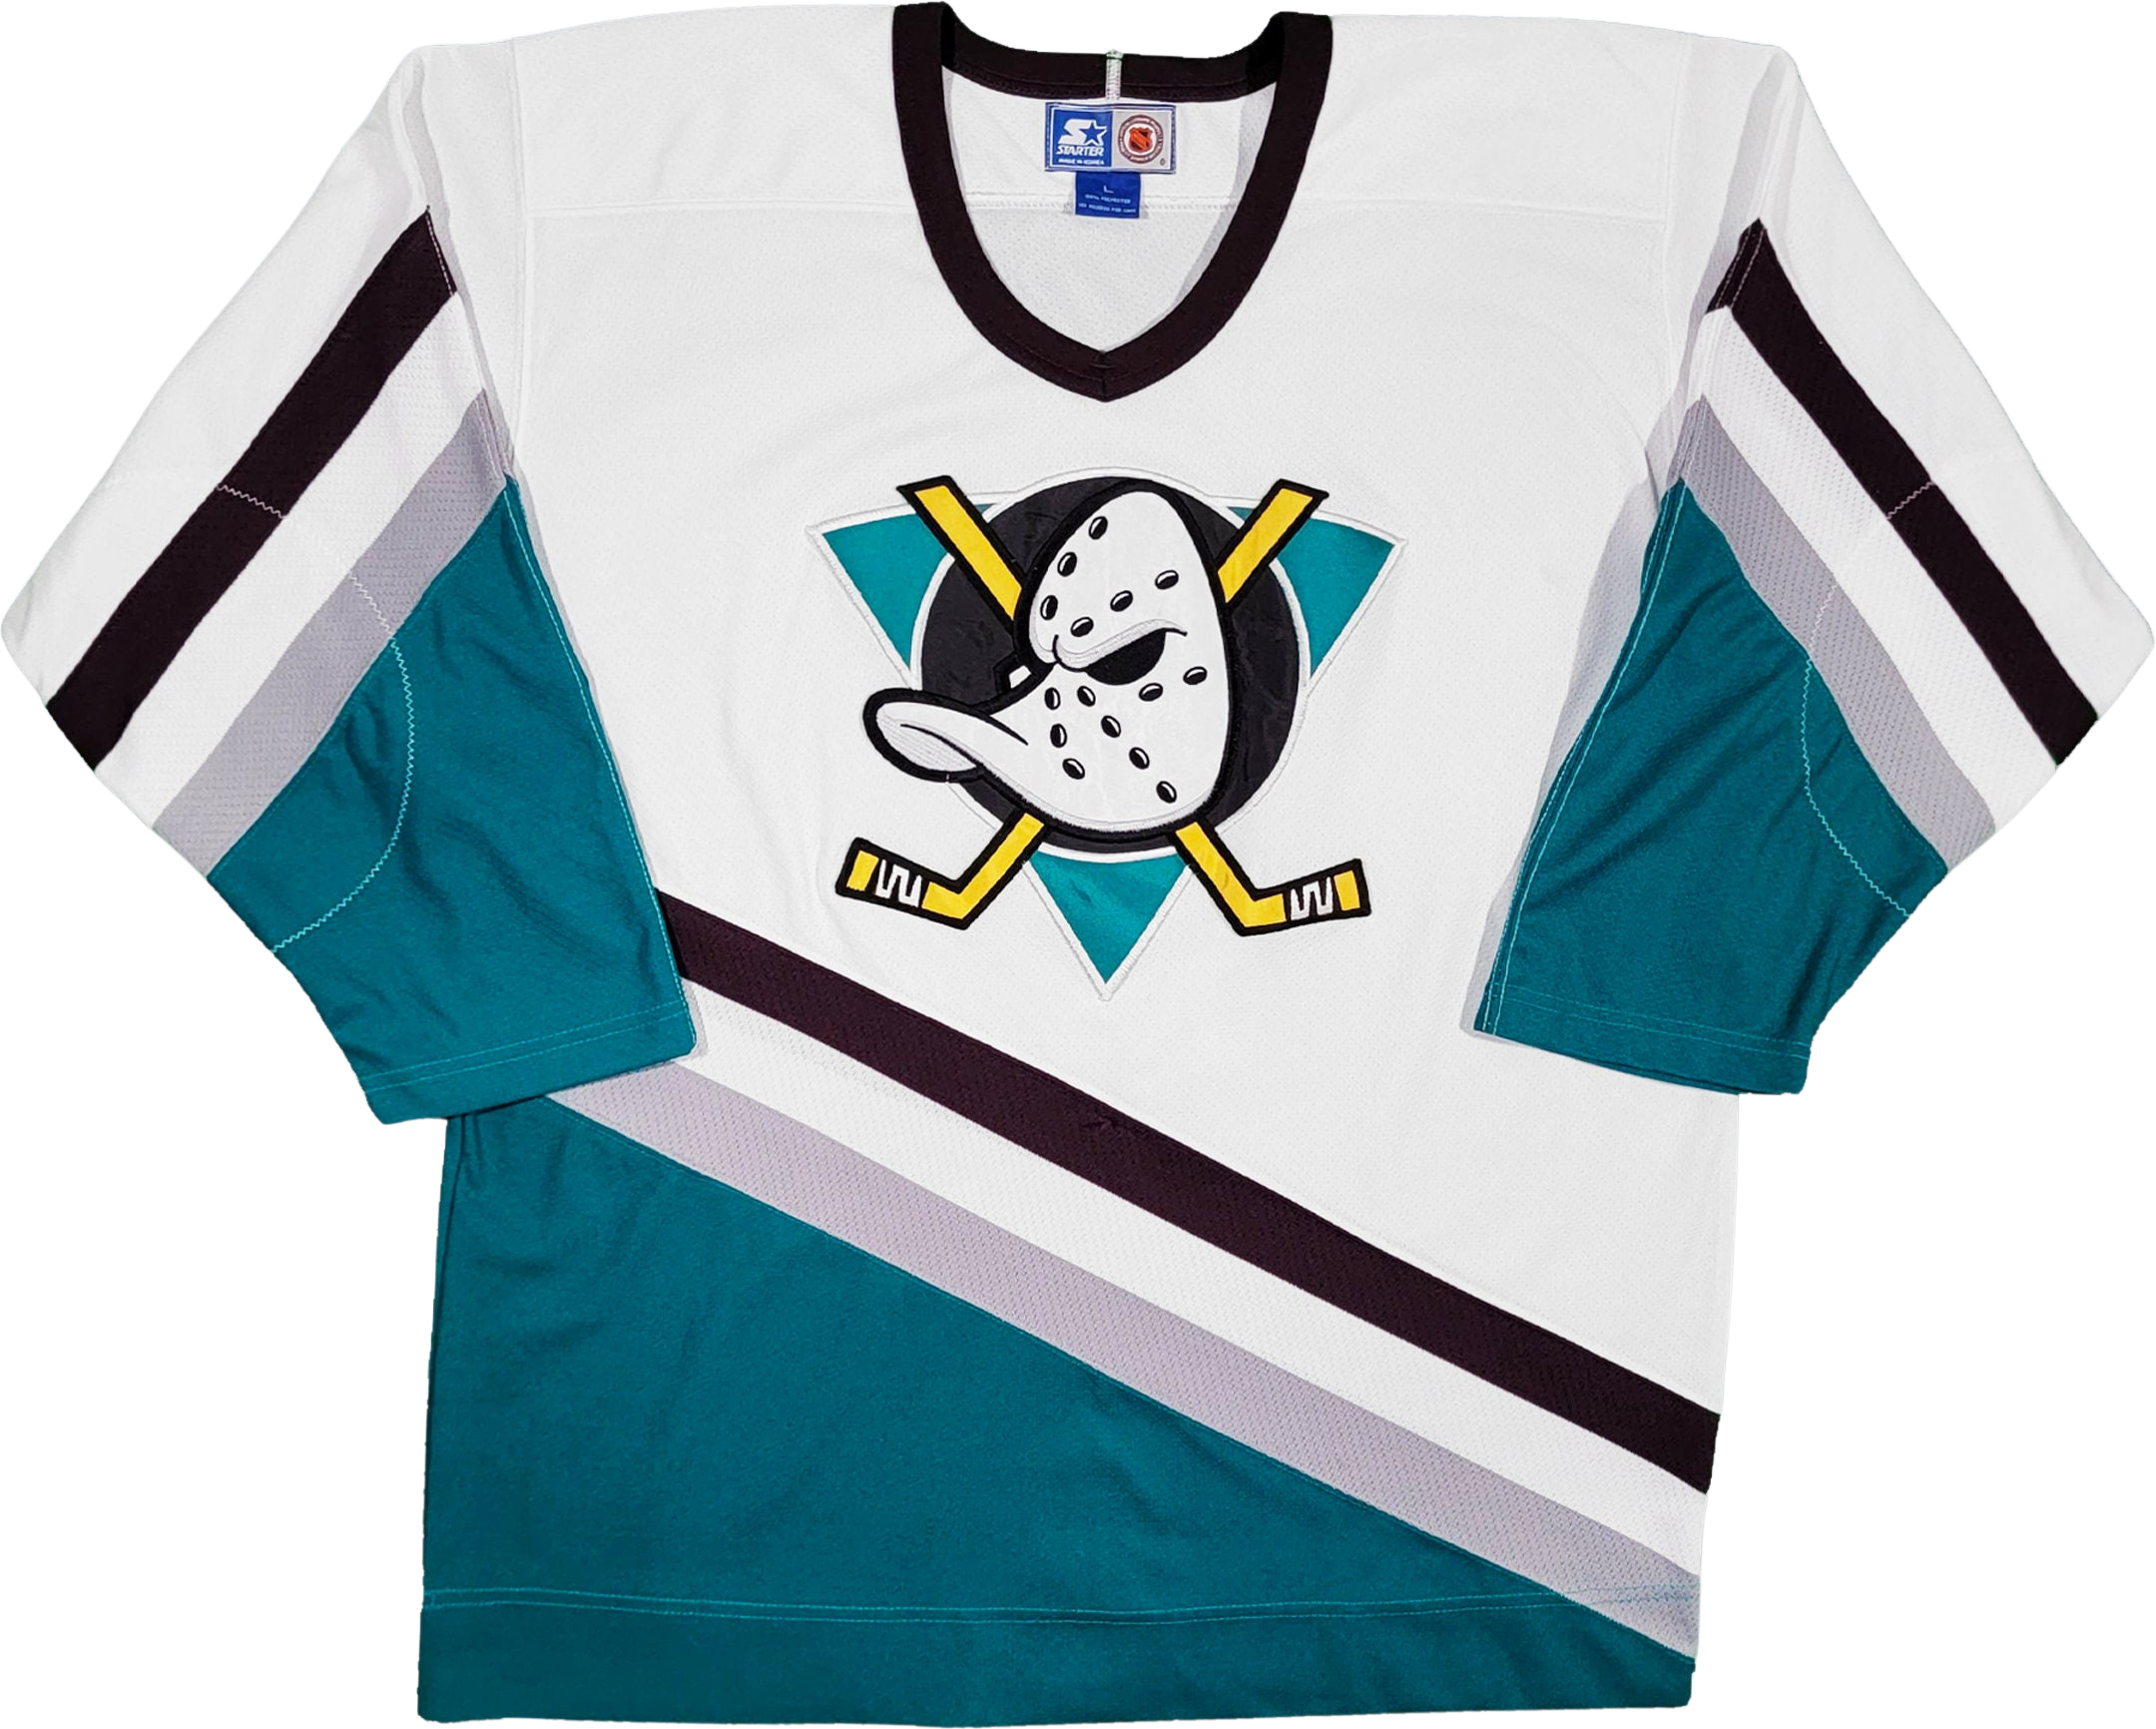 Vintage Anaheim Mighty Ducks NHL Jersey 